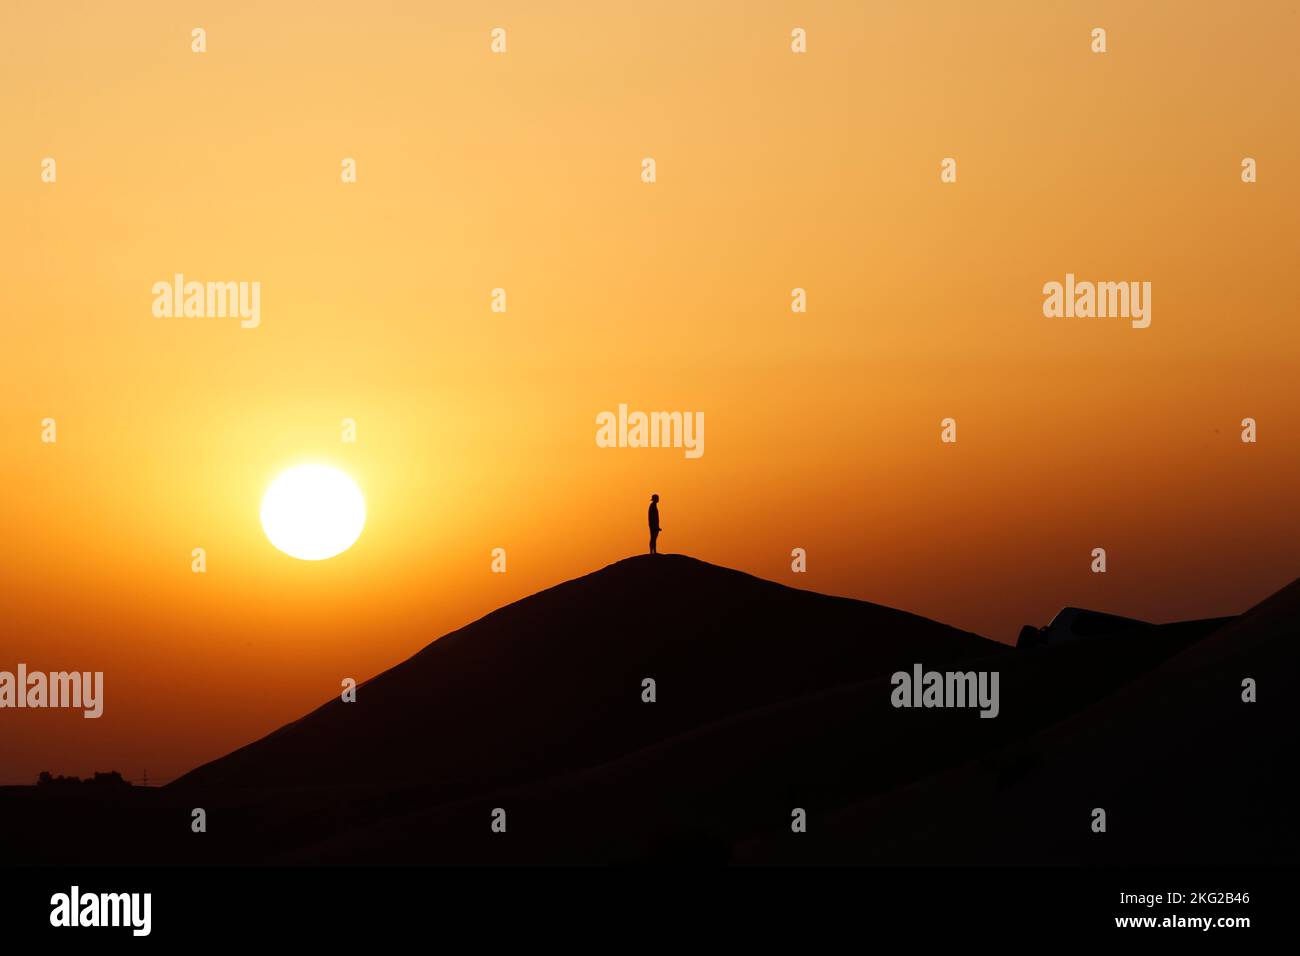 Silhouette auf Sanddüne. Meditation bei Sonnenuntergang in der Wüste. Konzept für Religion, Glauben, Gebet und Spiritualität. Stockfoto